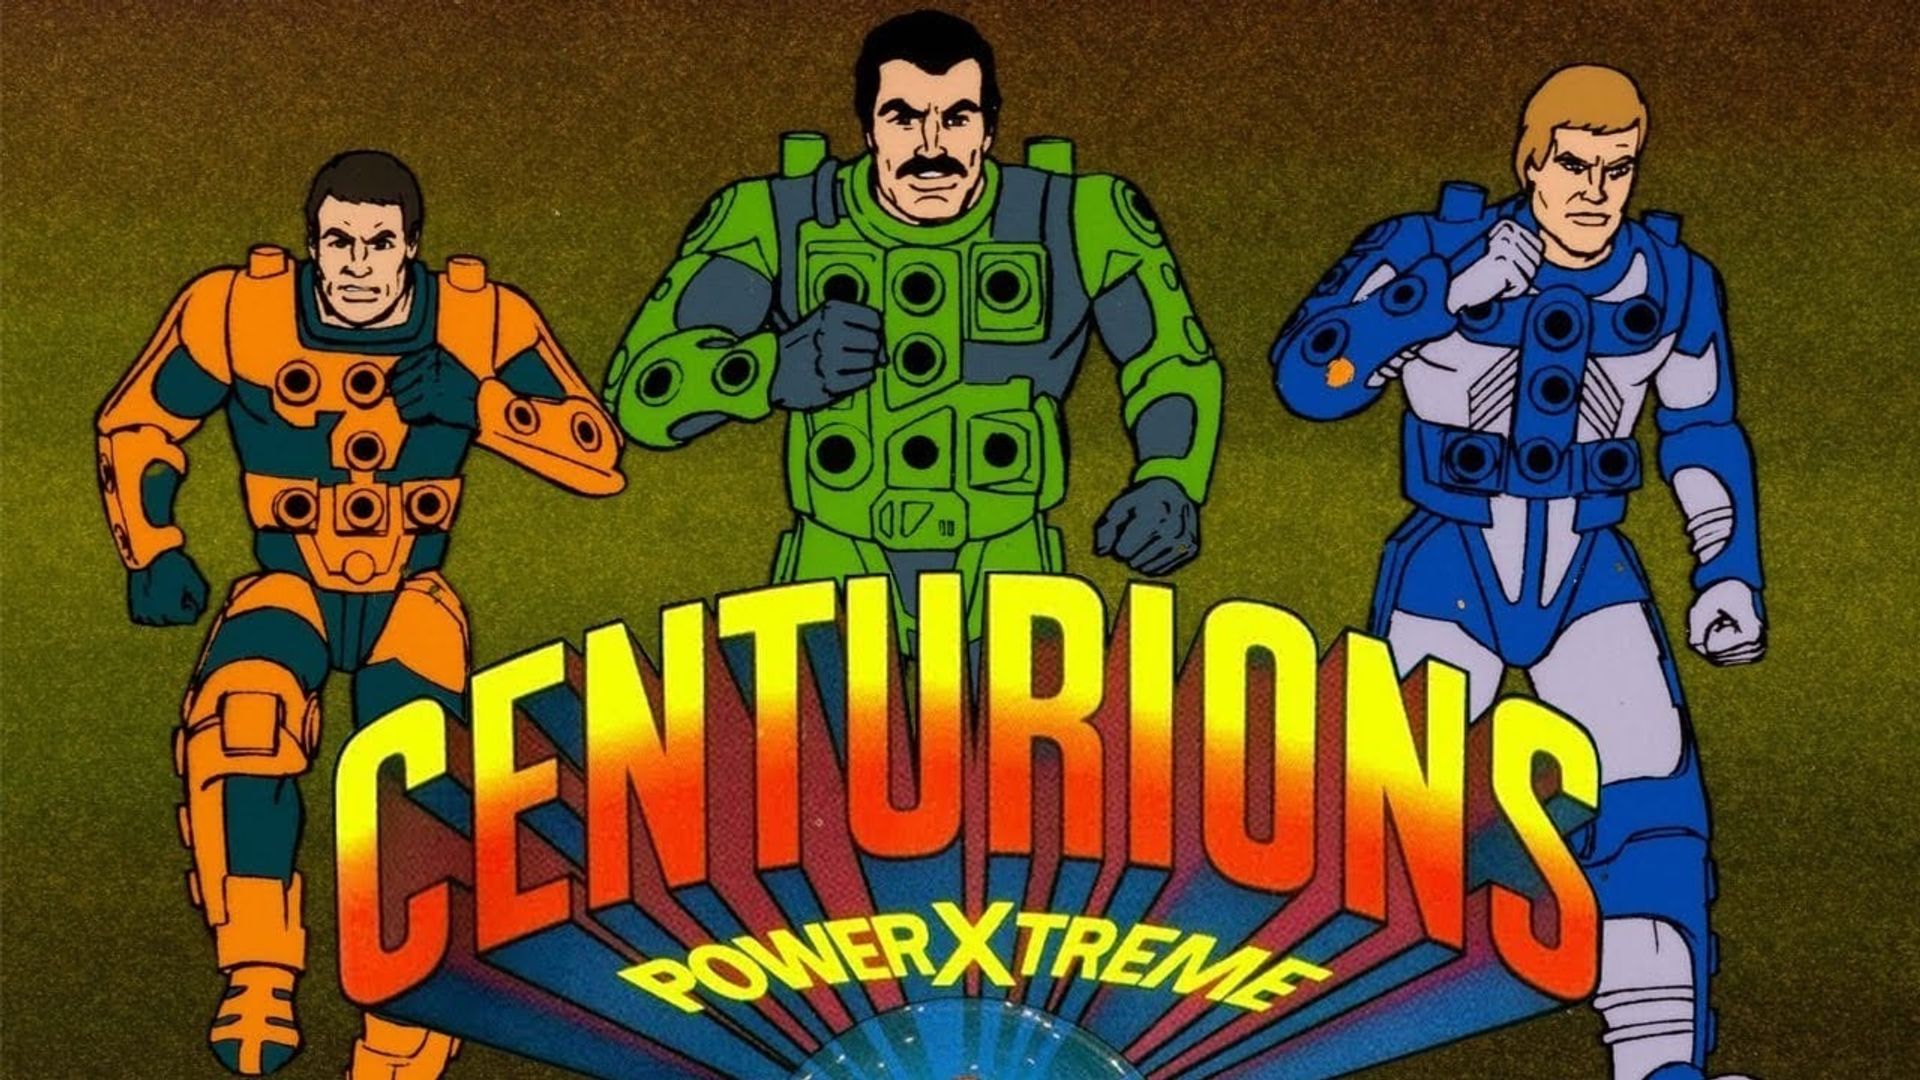 Centurions background